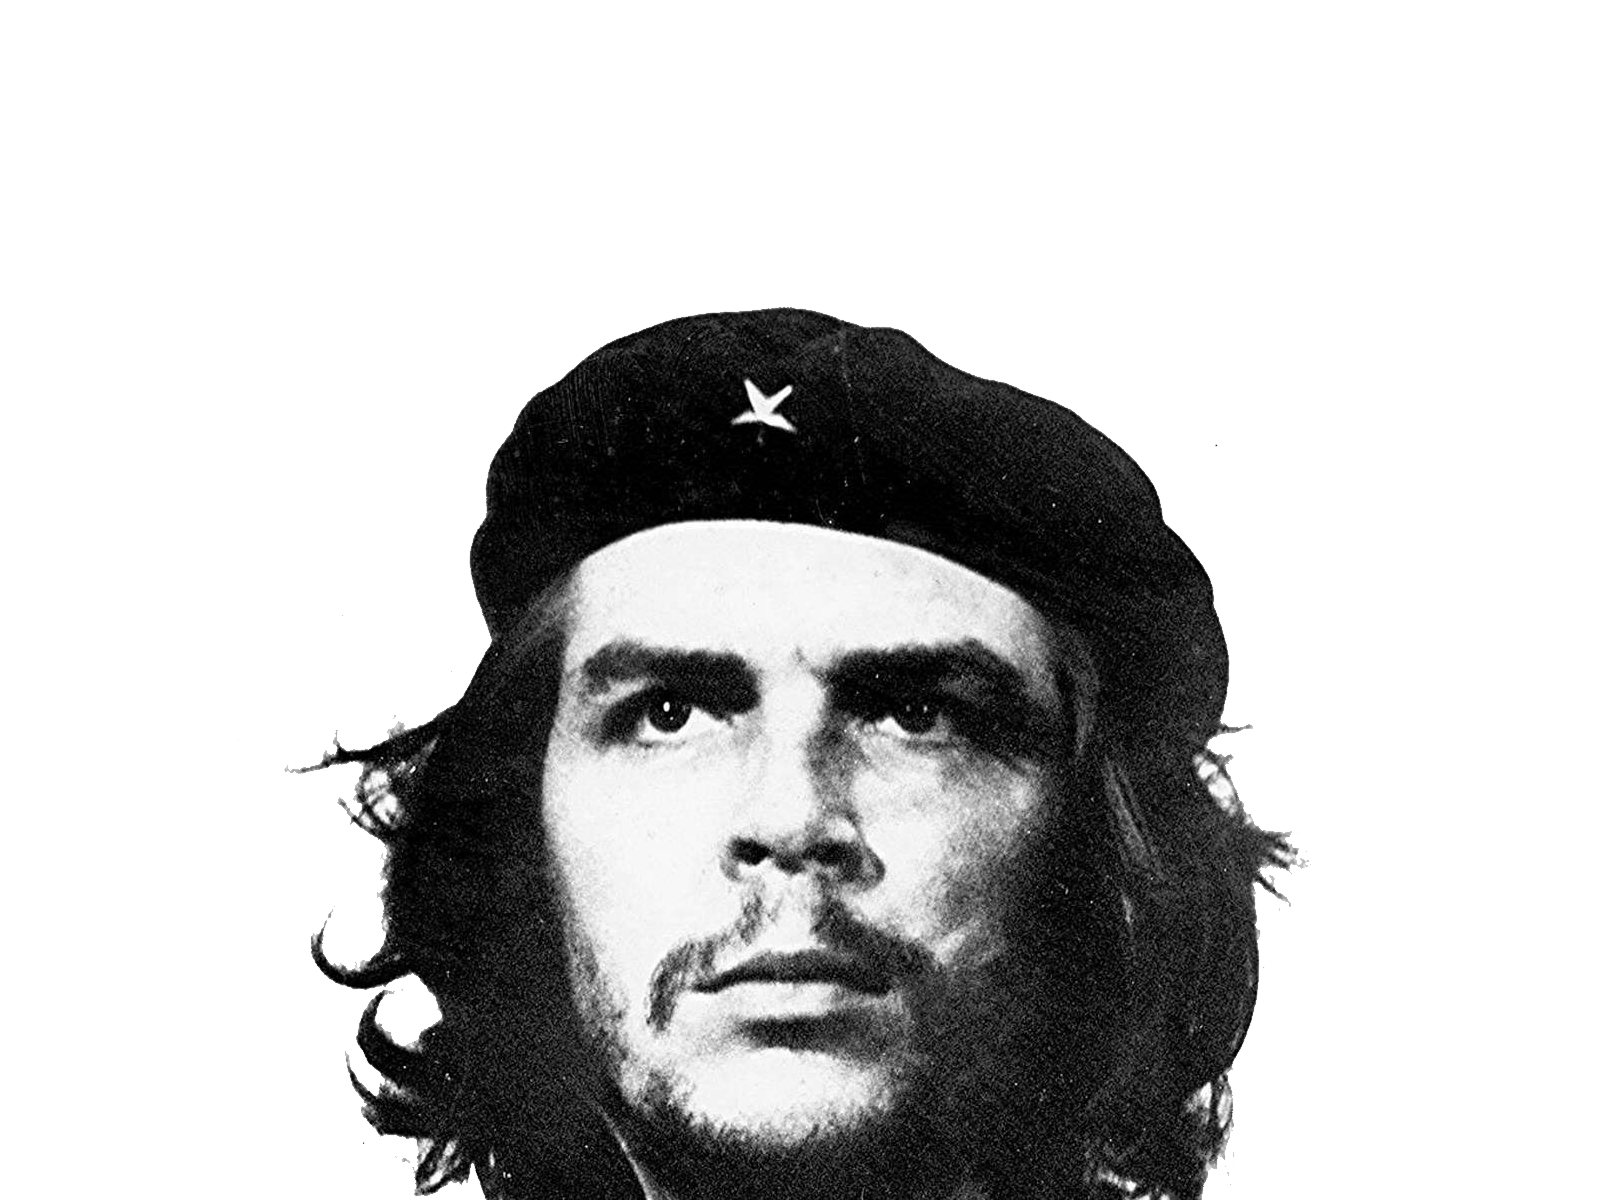 Che Guevara PNG Image.